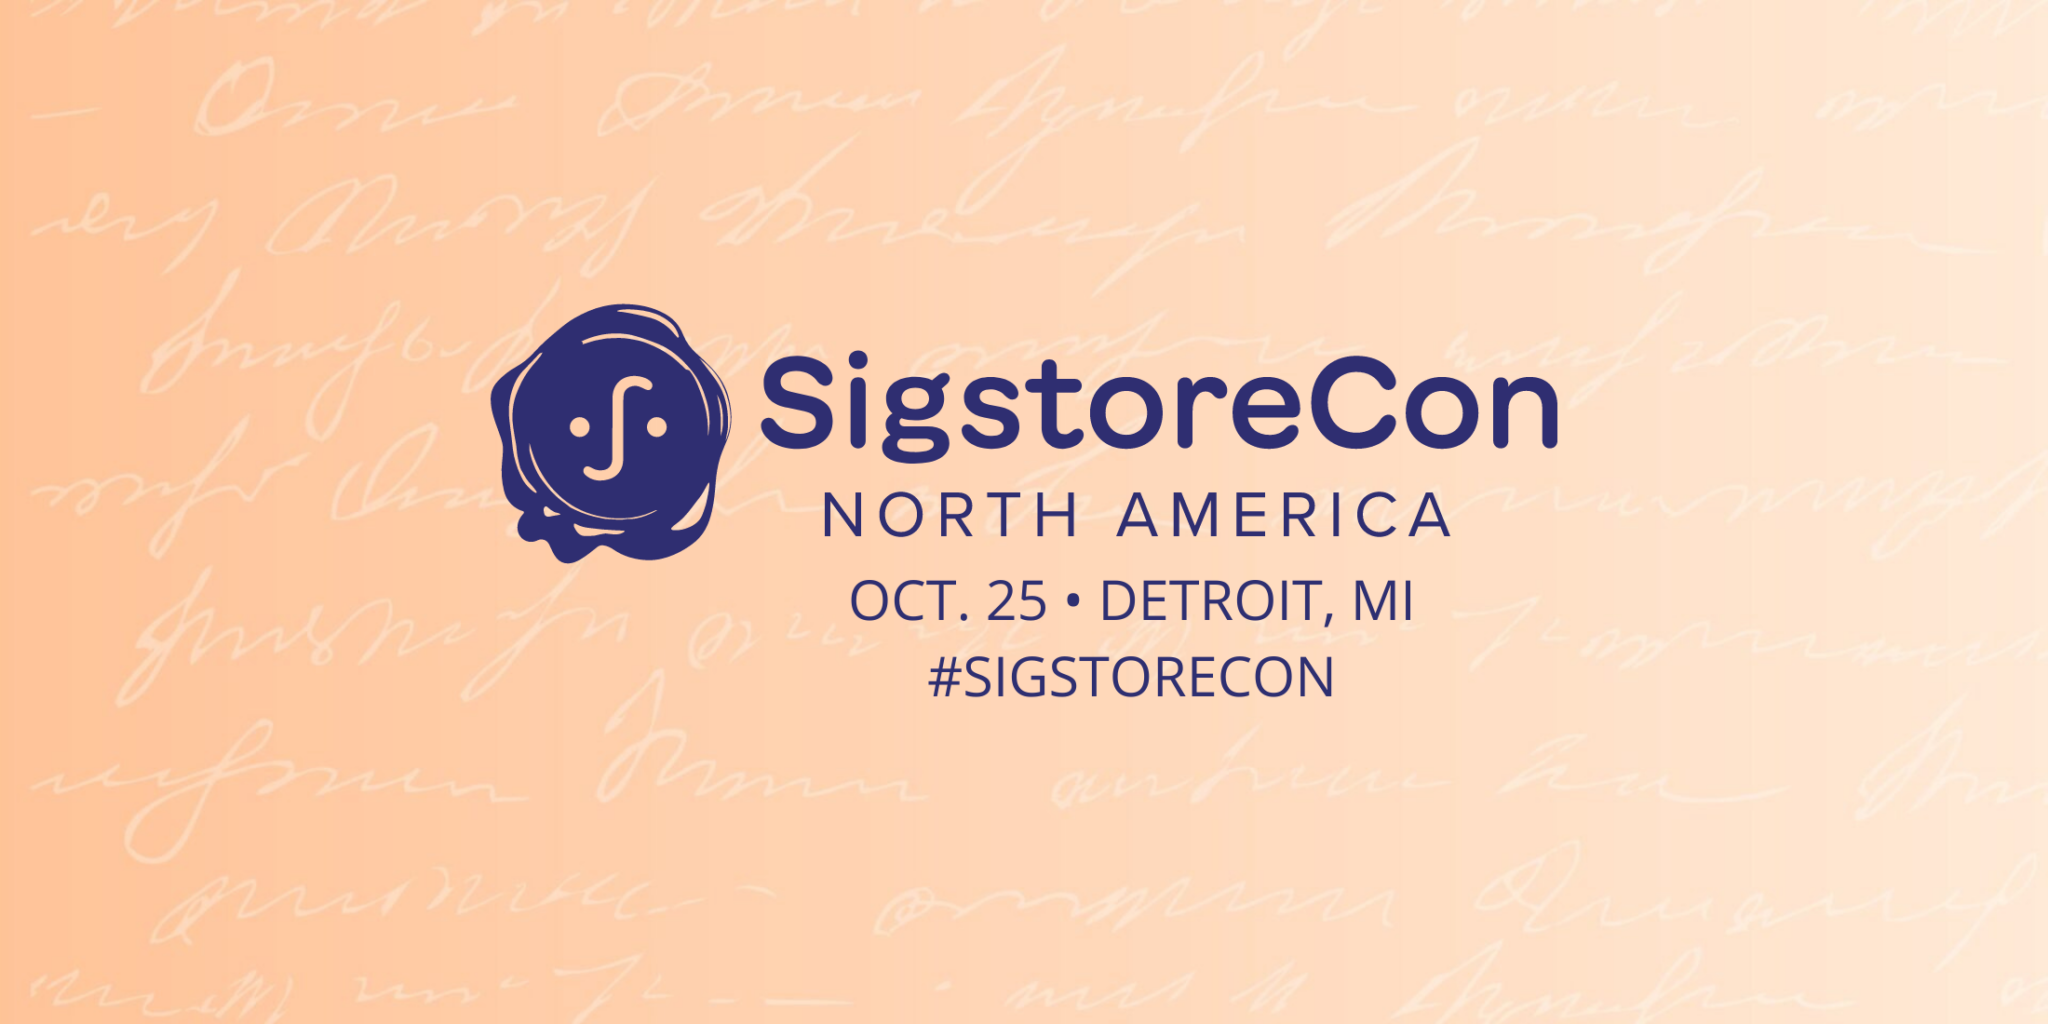 SigstoreCon North America